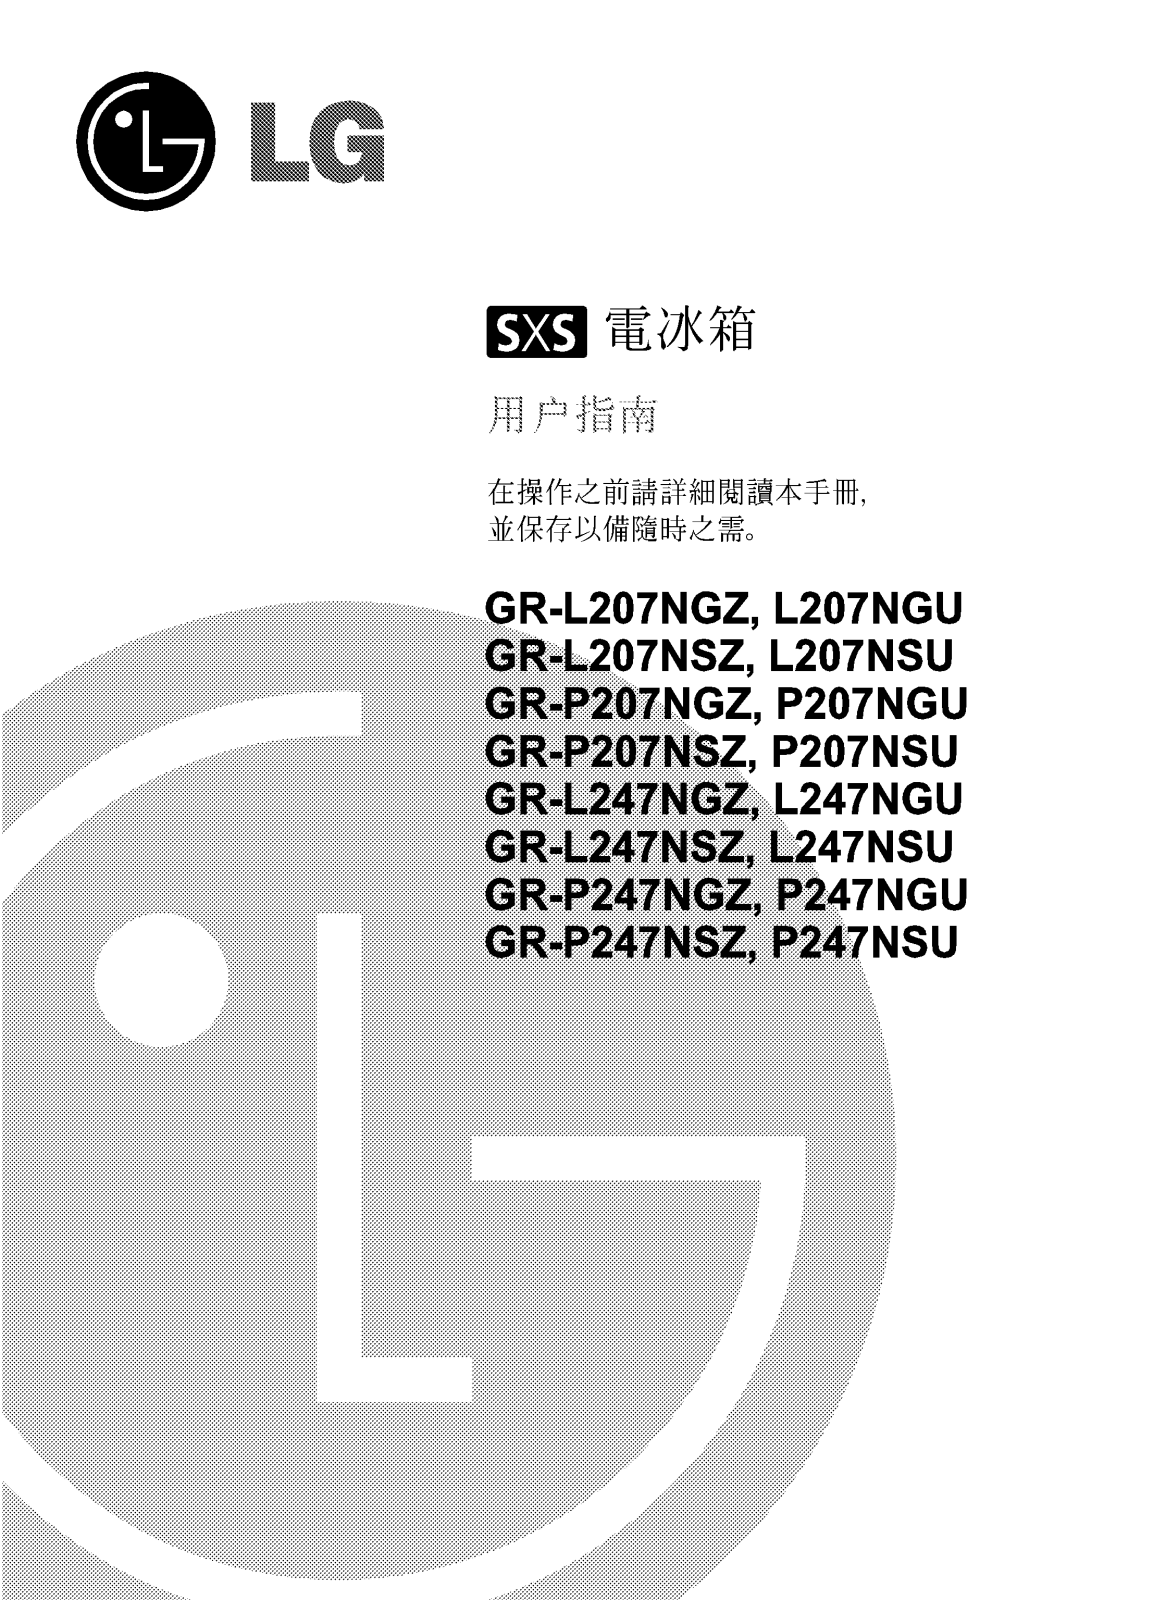 Lg GR-L207NGZ, GR-L207NSZ, GR-P207NGZ, GR-P207NSZ, GR-L247NGZ User Manual